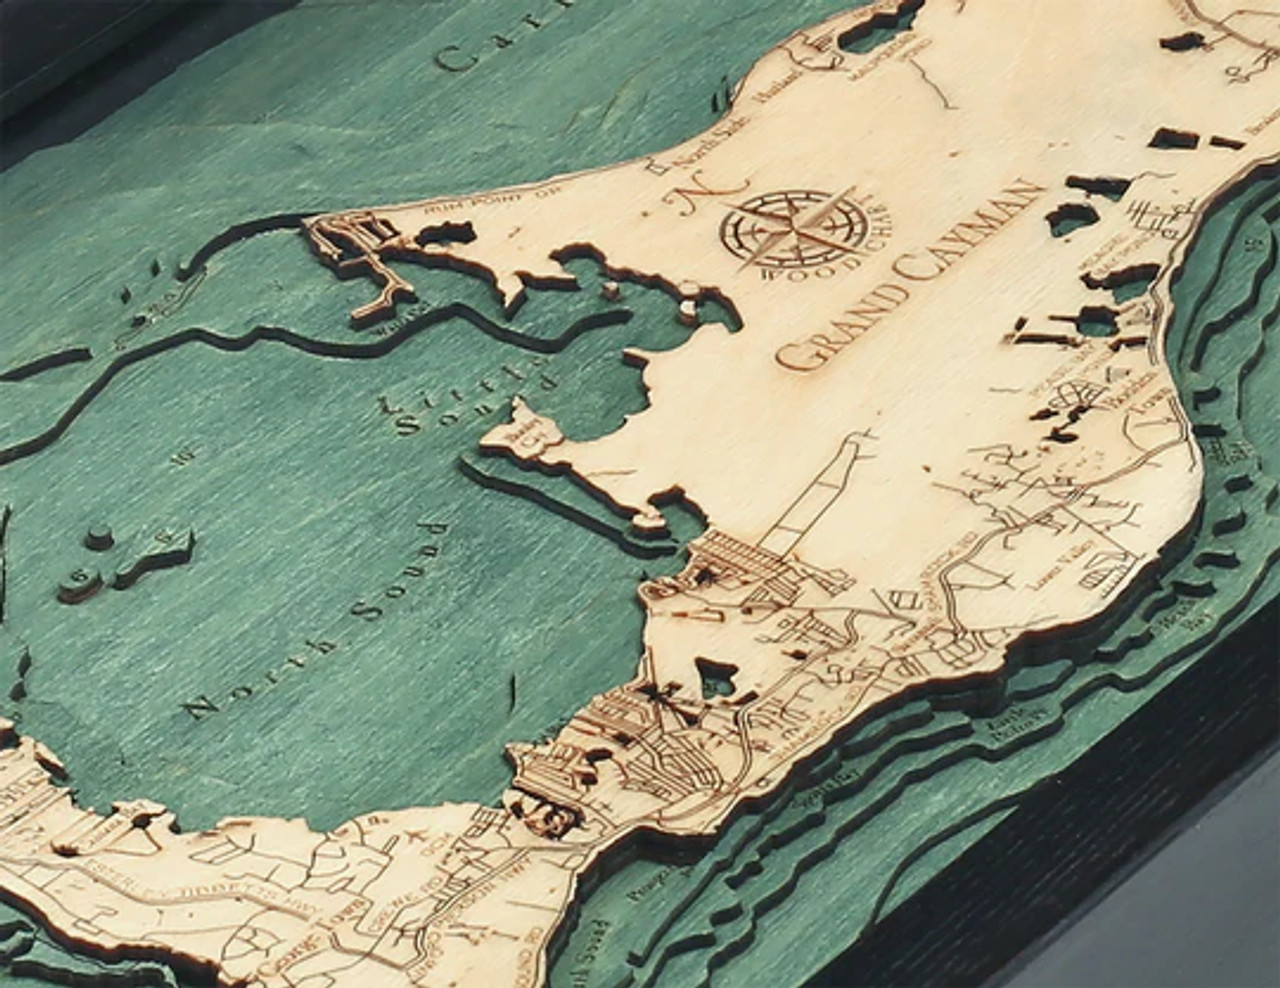 Grand Cayman - 3D Nautical Wood Chart